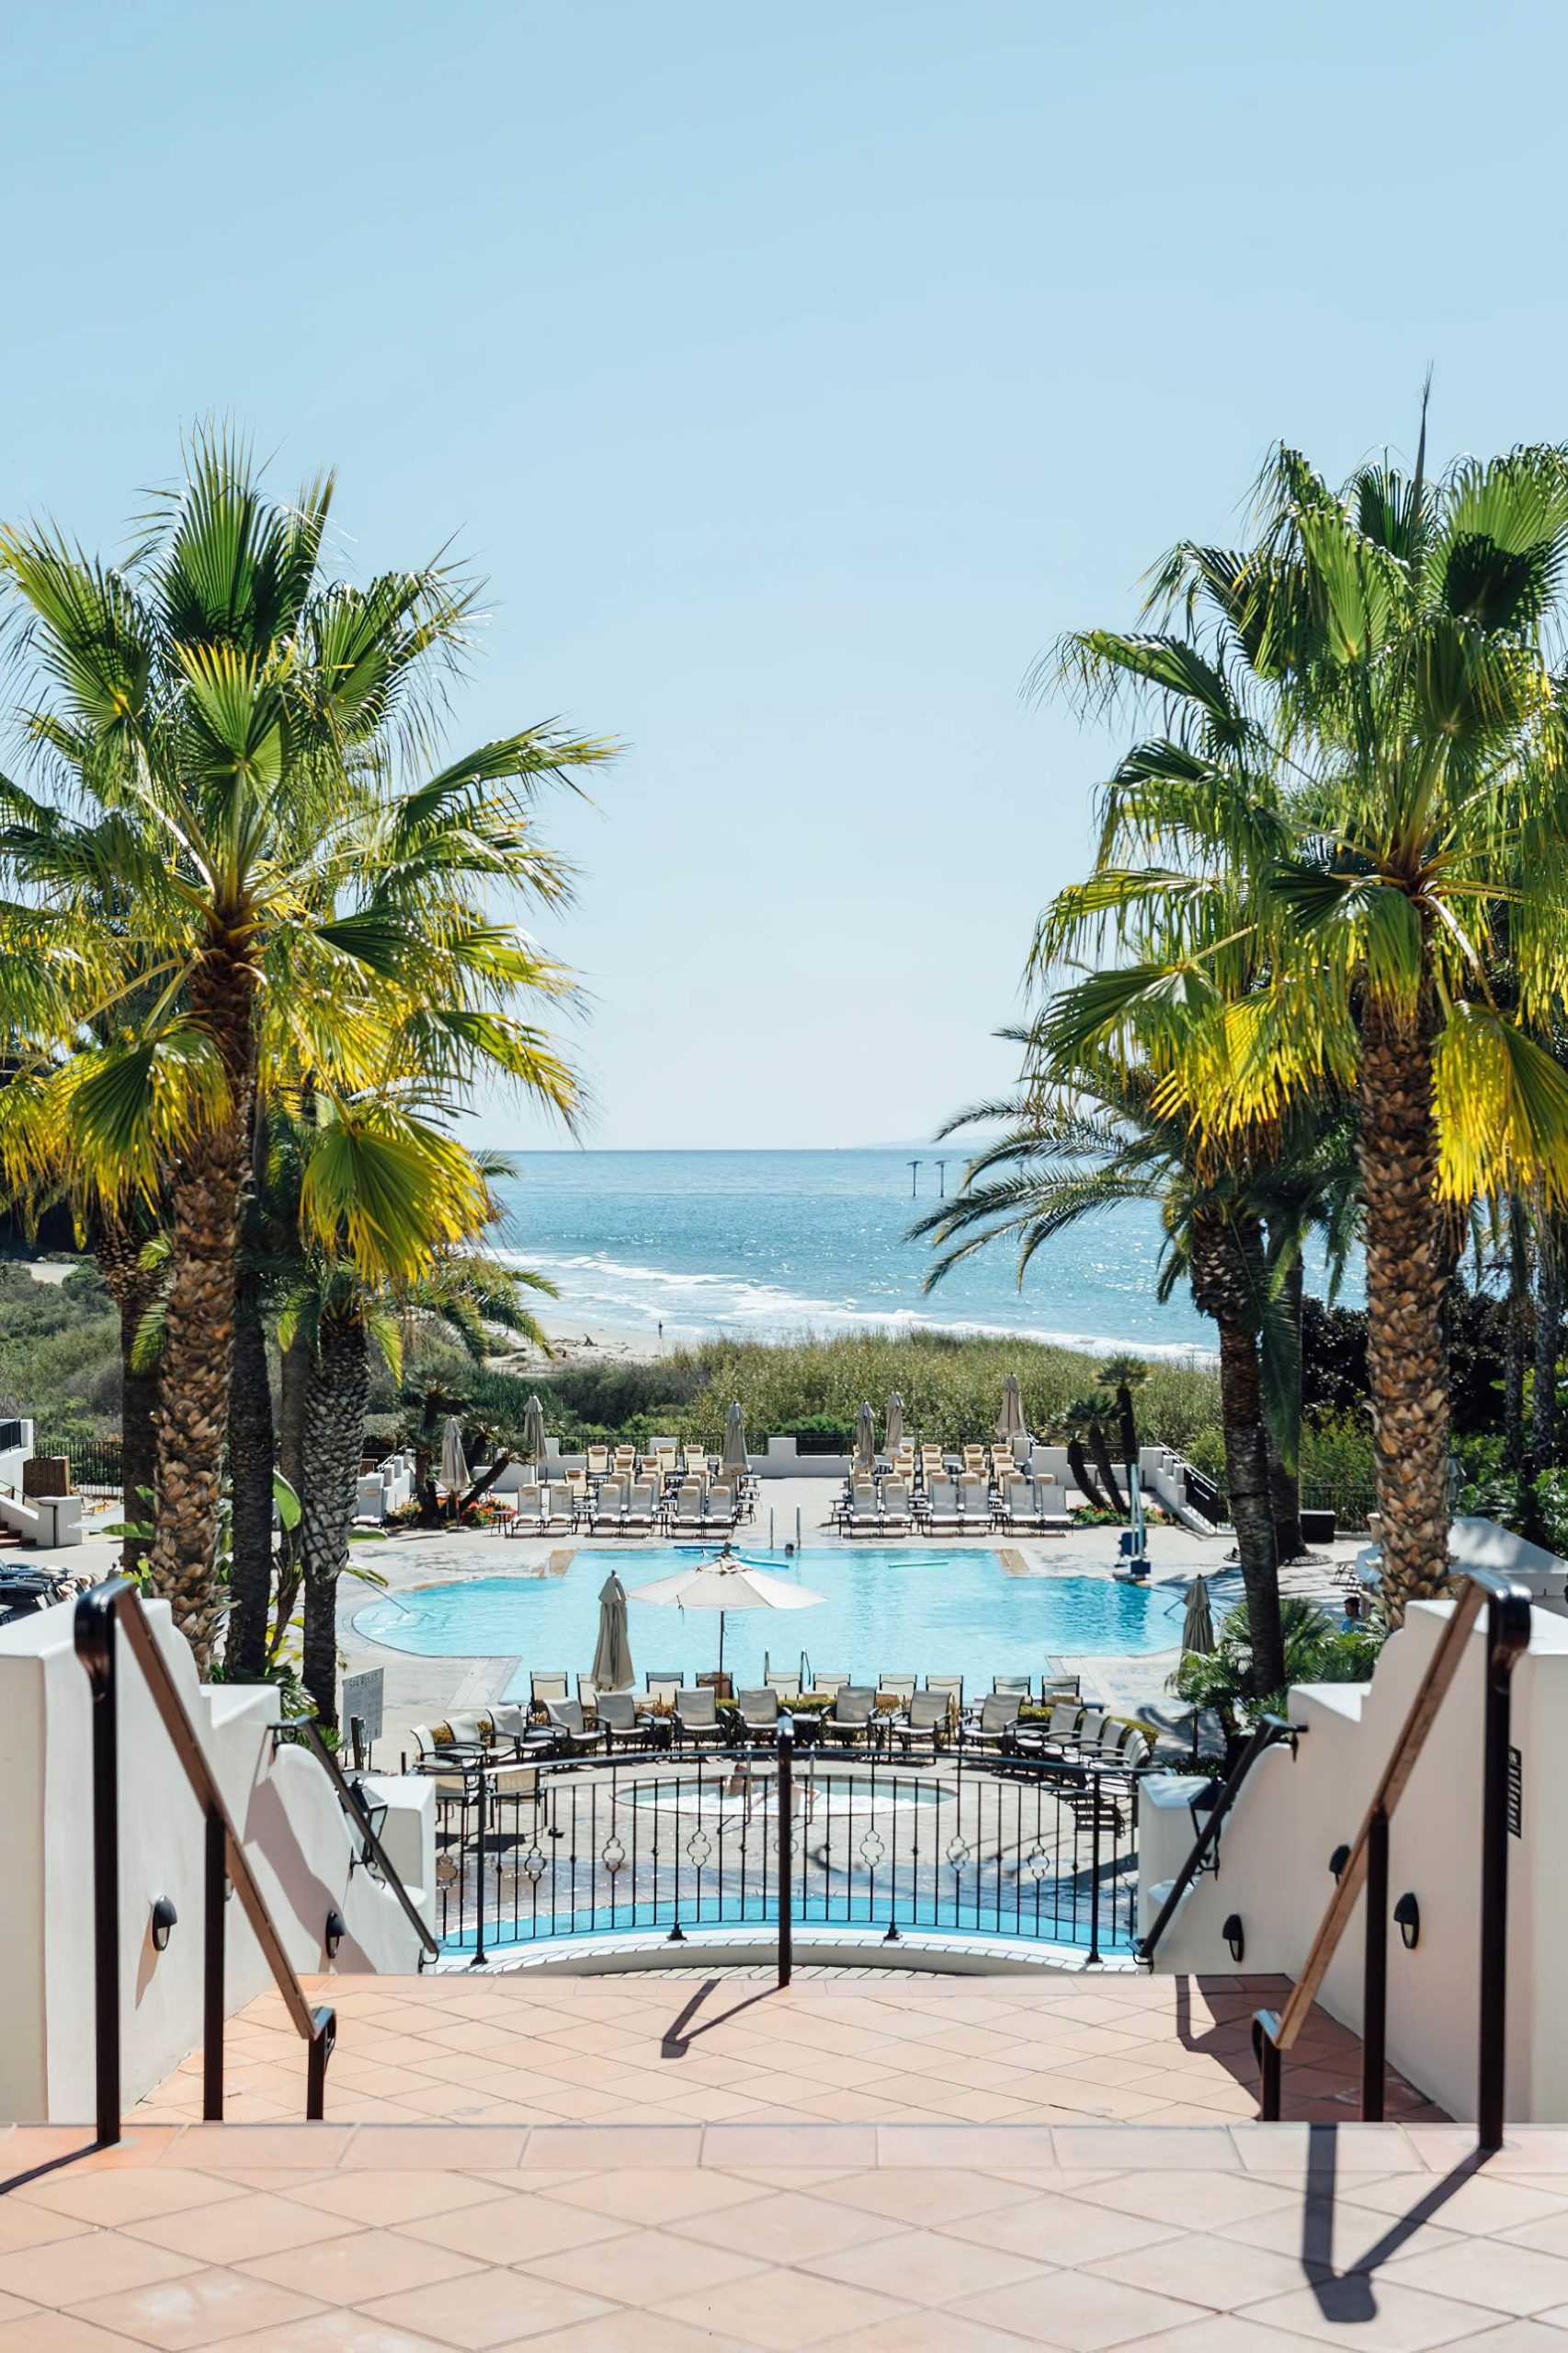 The Ritz-Carlton Bacara, Santa Barbara Resort - Santa Barbara, CA, USA - Resort Pool Ocean View